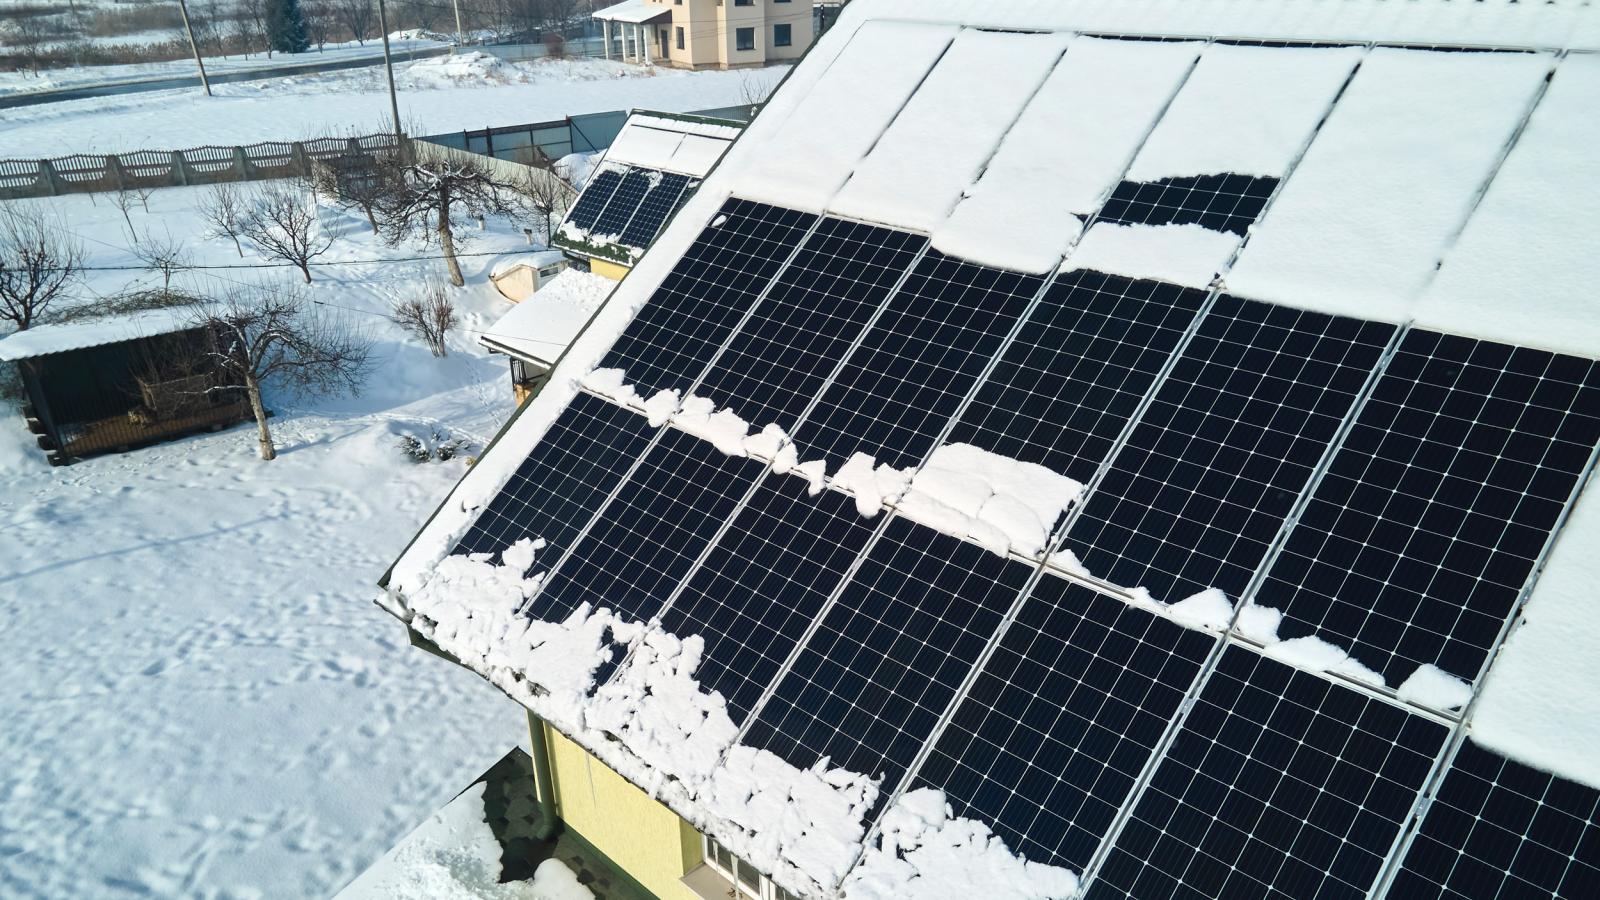 Luftaufnahme der Schneeschmelze von abgedeckten photovoltaischen Solarmodulen, die auf dem Dach eines Hauses installiert sind, um saubere elektrische Energie zu erzeugen